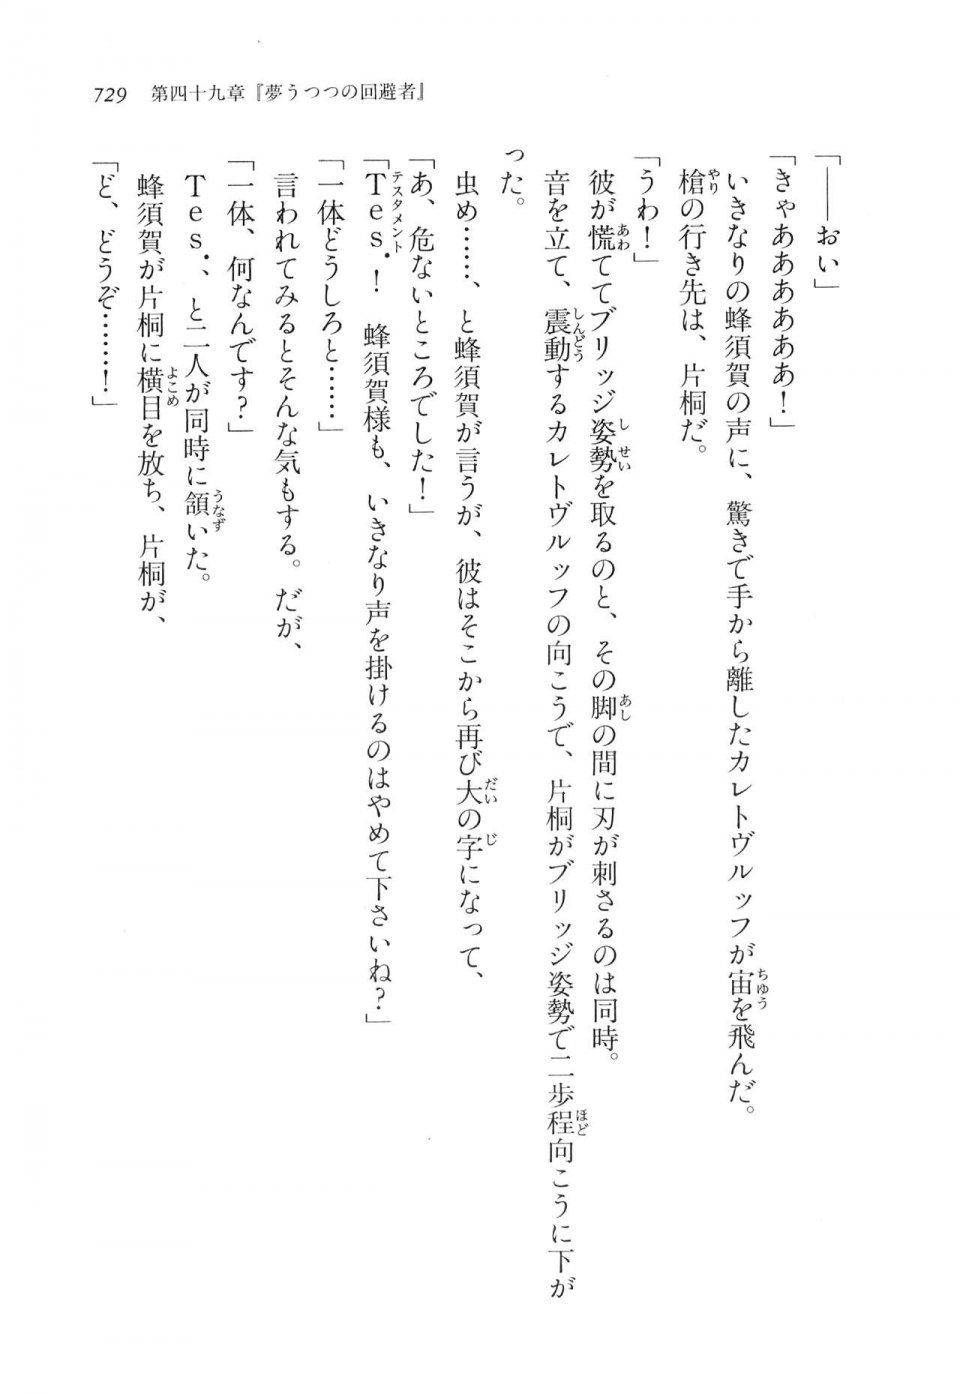 Kyoukai Senjou no Horizon LN Vol 17(7B) - Photo #731